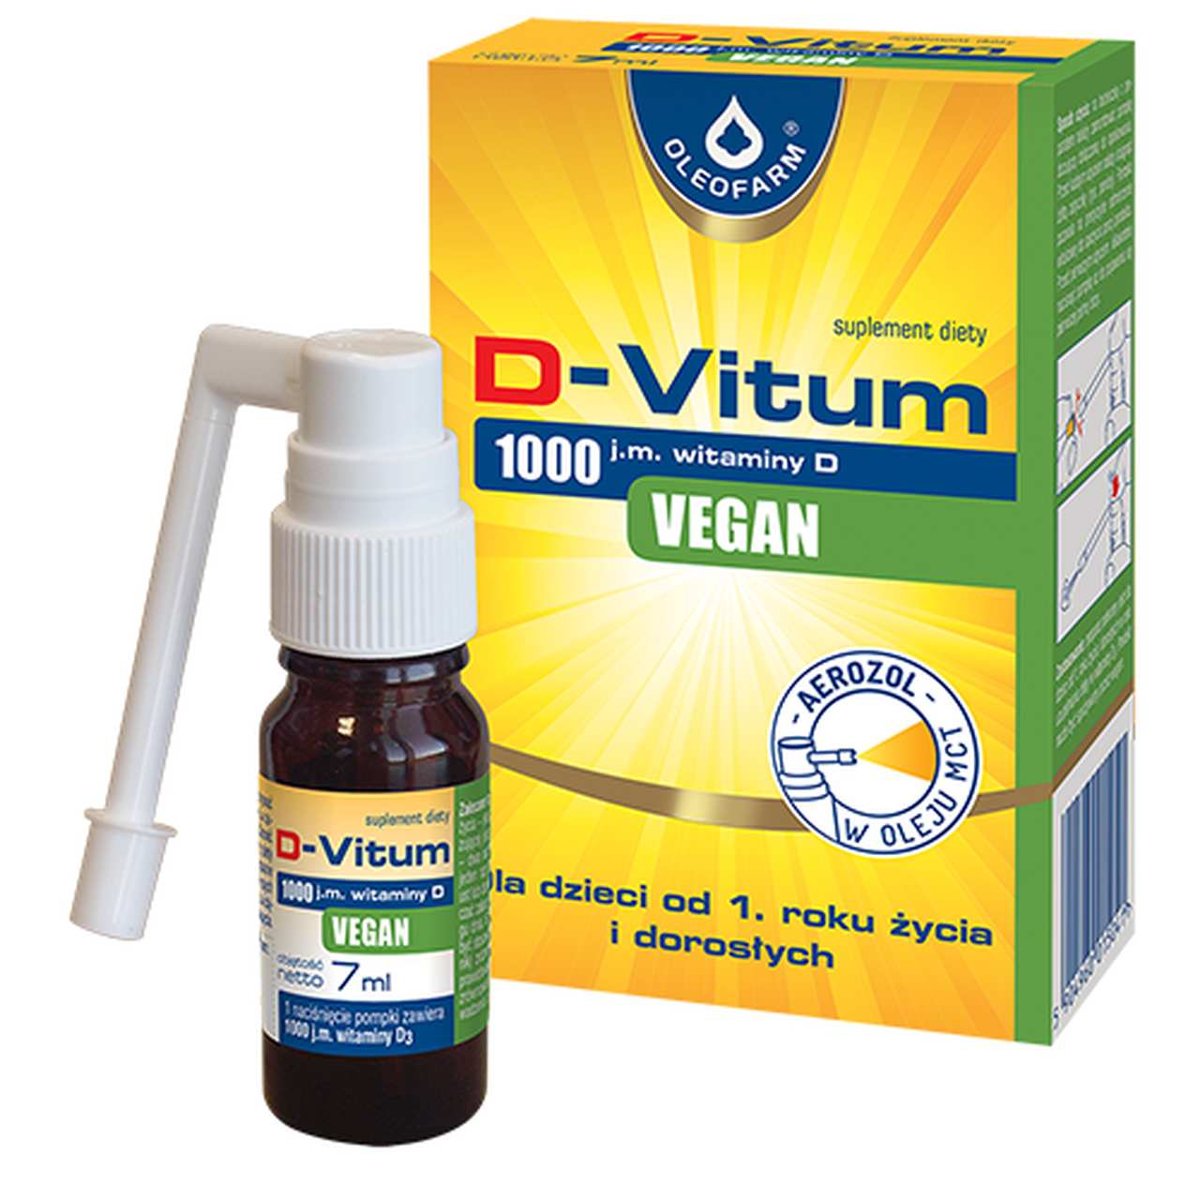 Oleofarm D-Vitum 1000 j.m. Vegan witamina D aerozol dla dzieci od 1. roku życia i dorosłych 7 ml 3608721